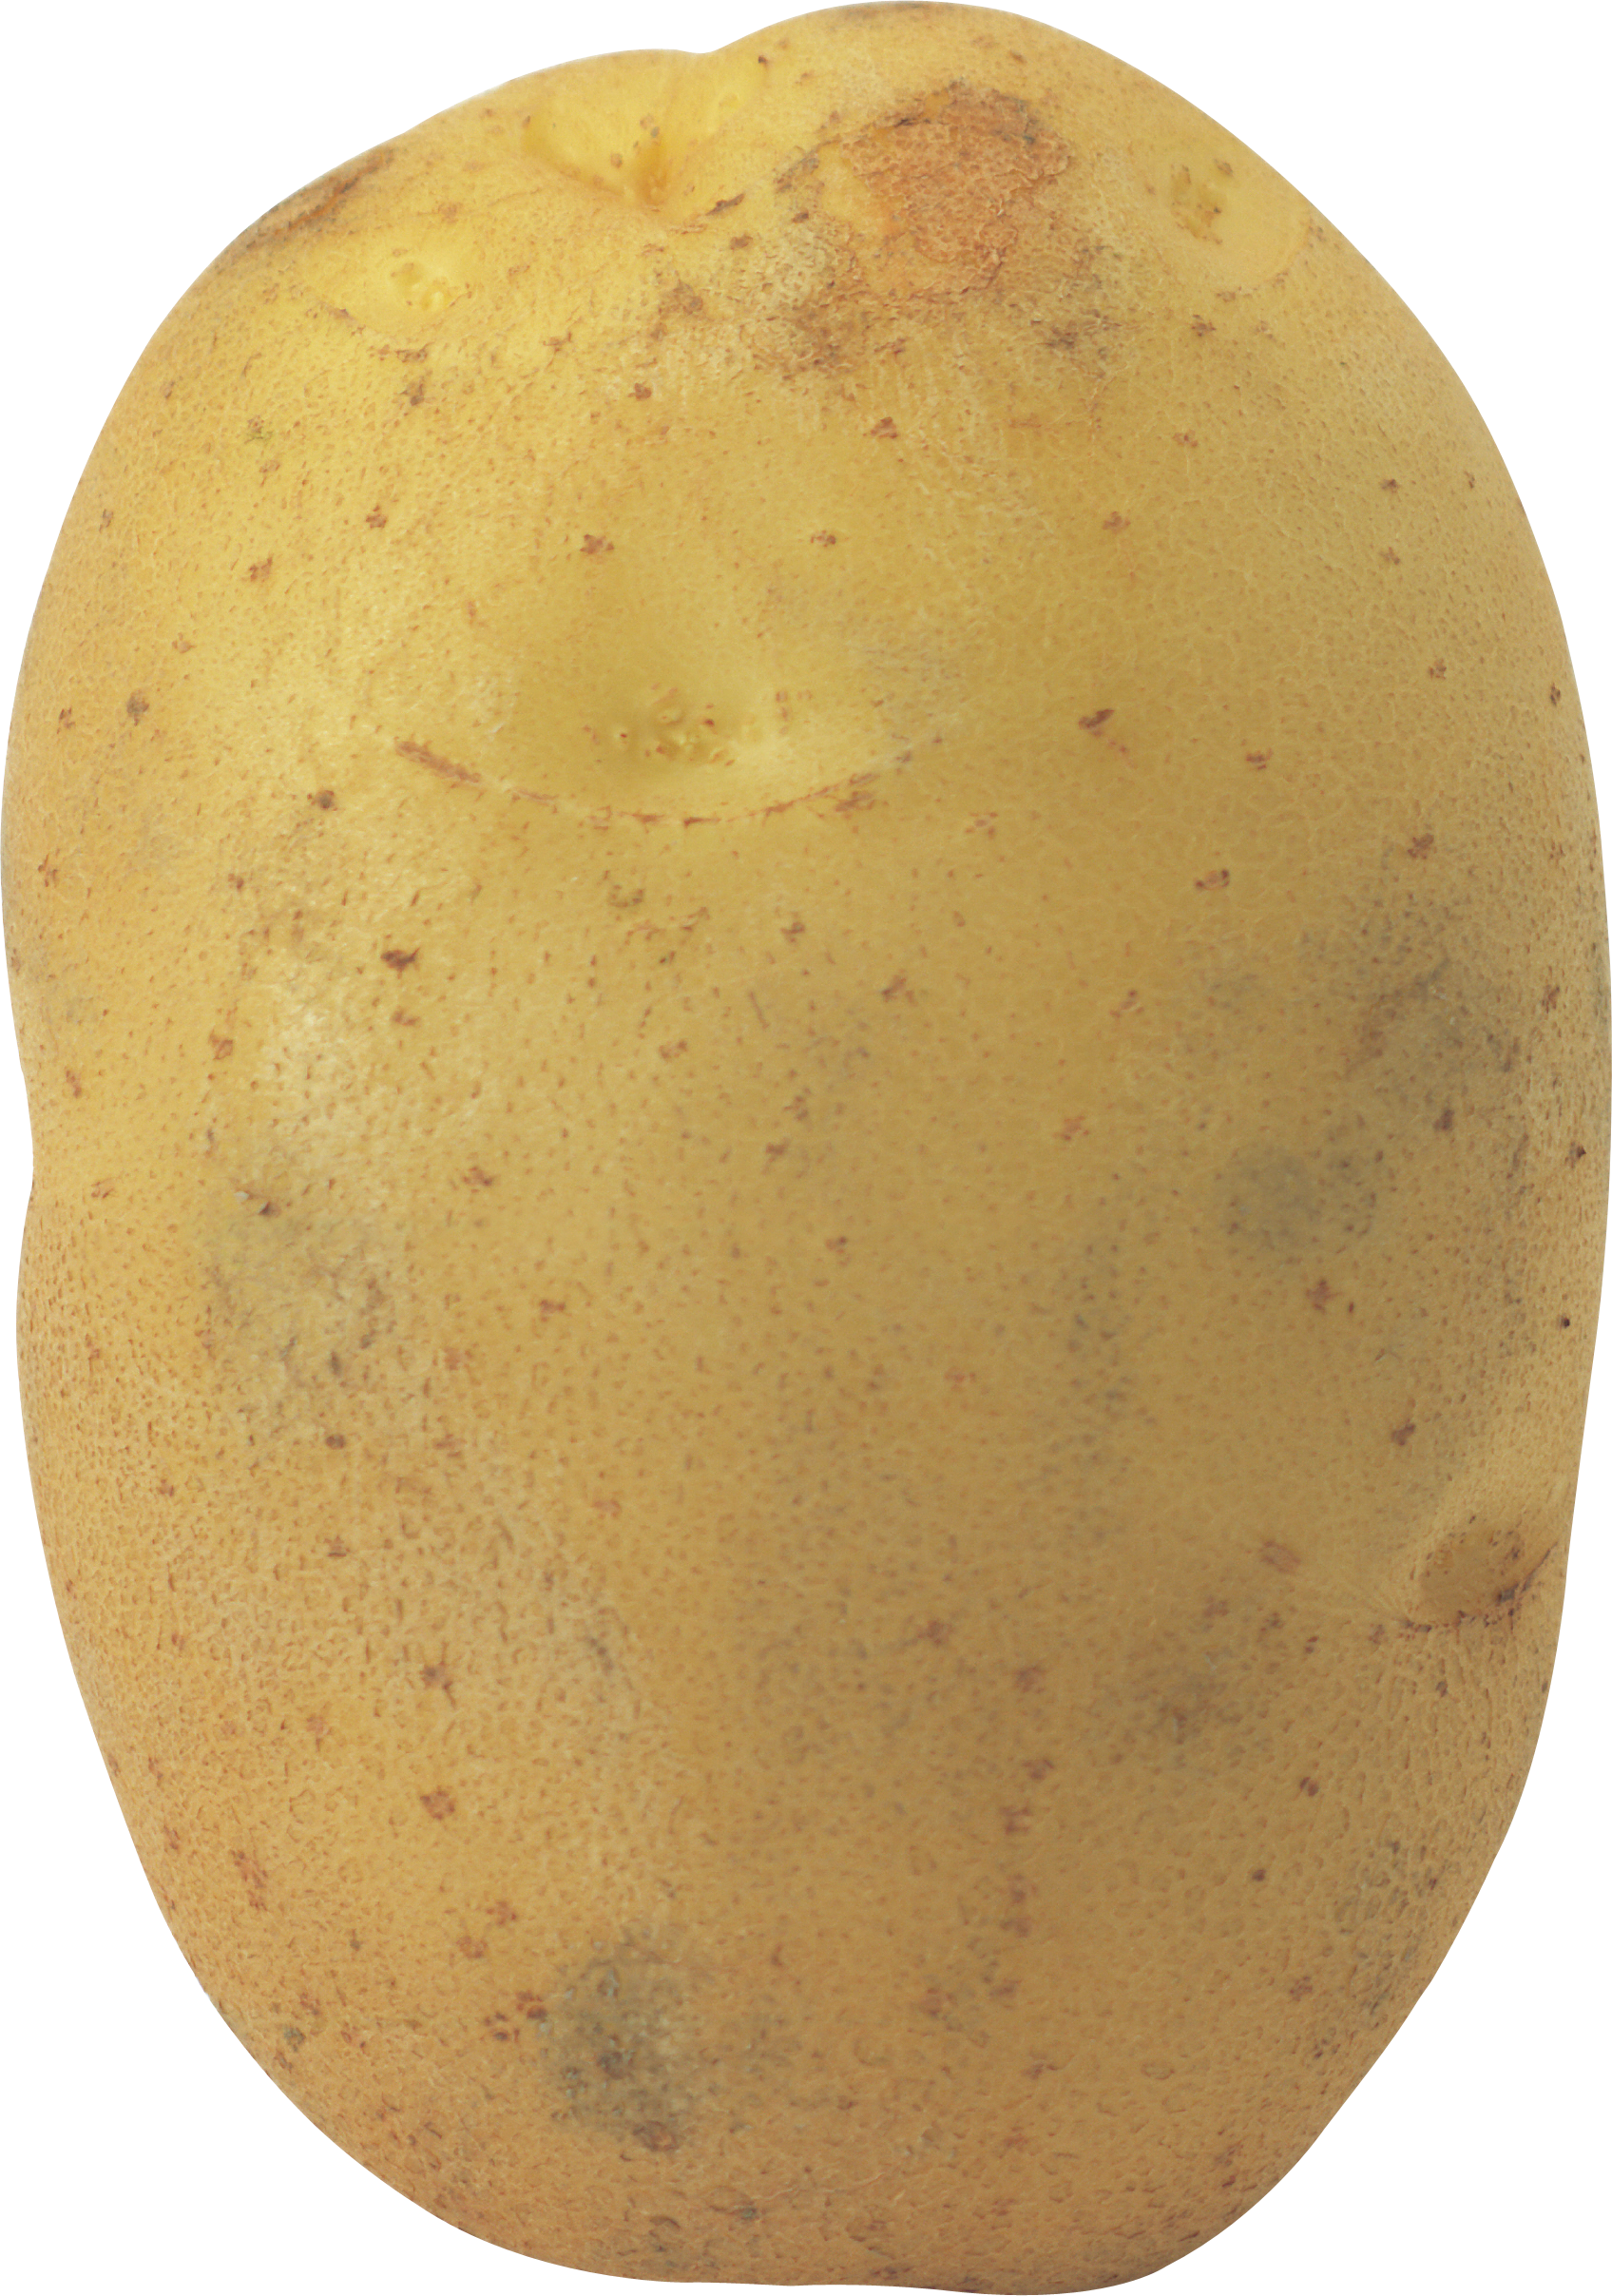 Grosses pommes de terre